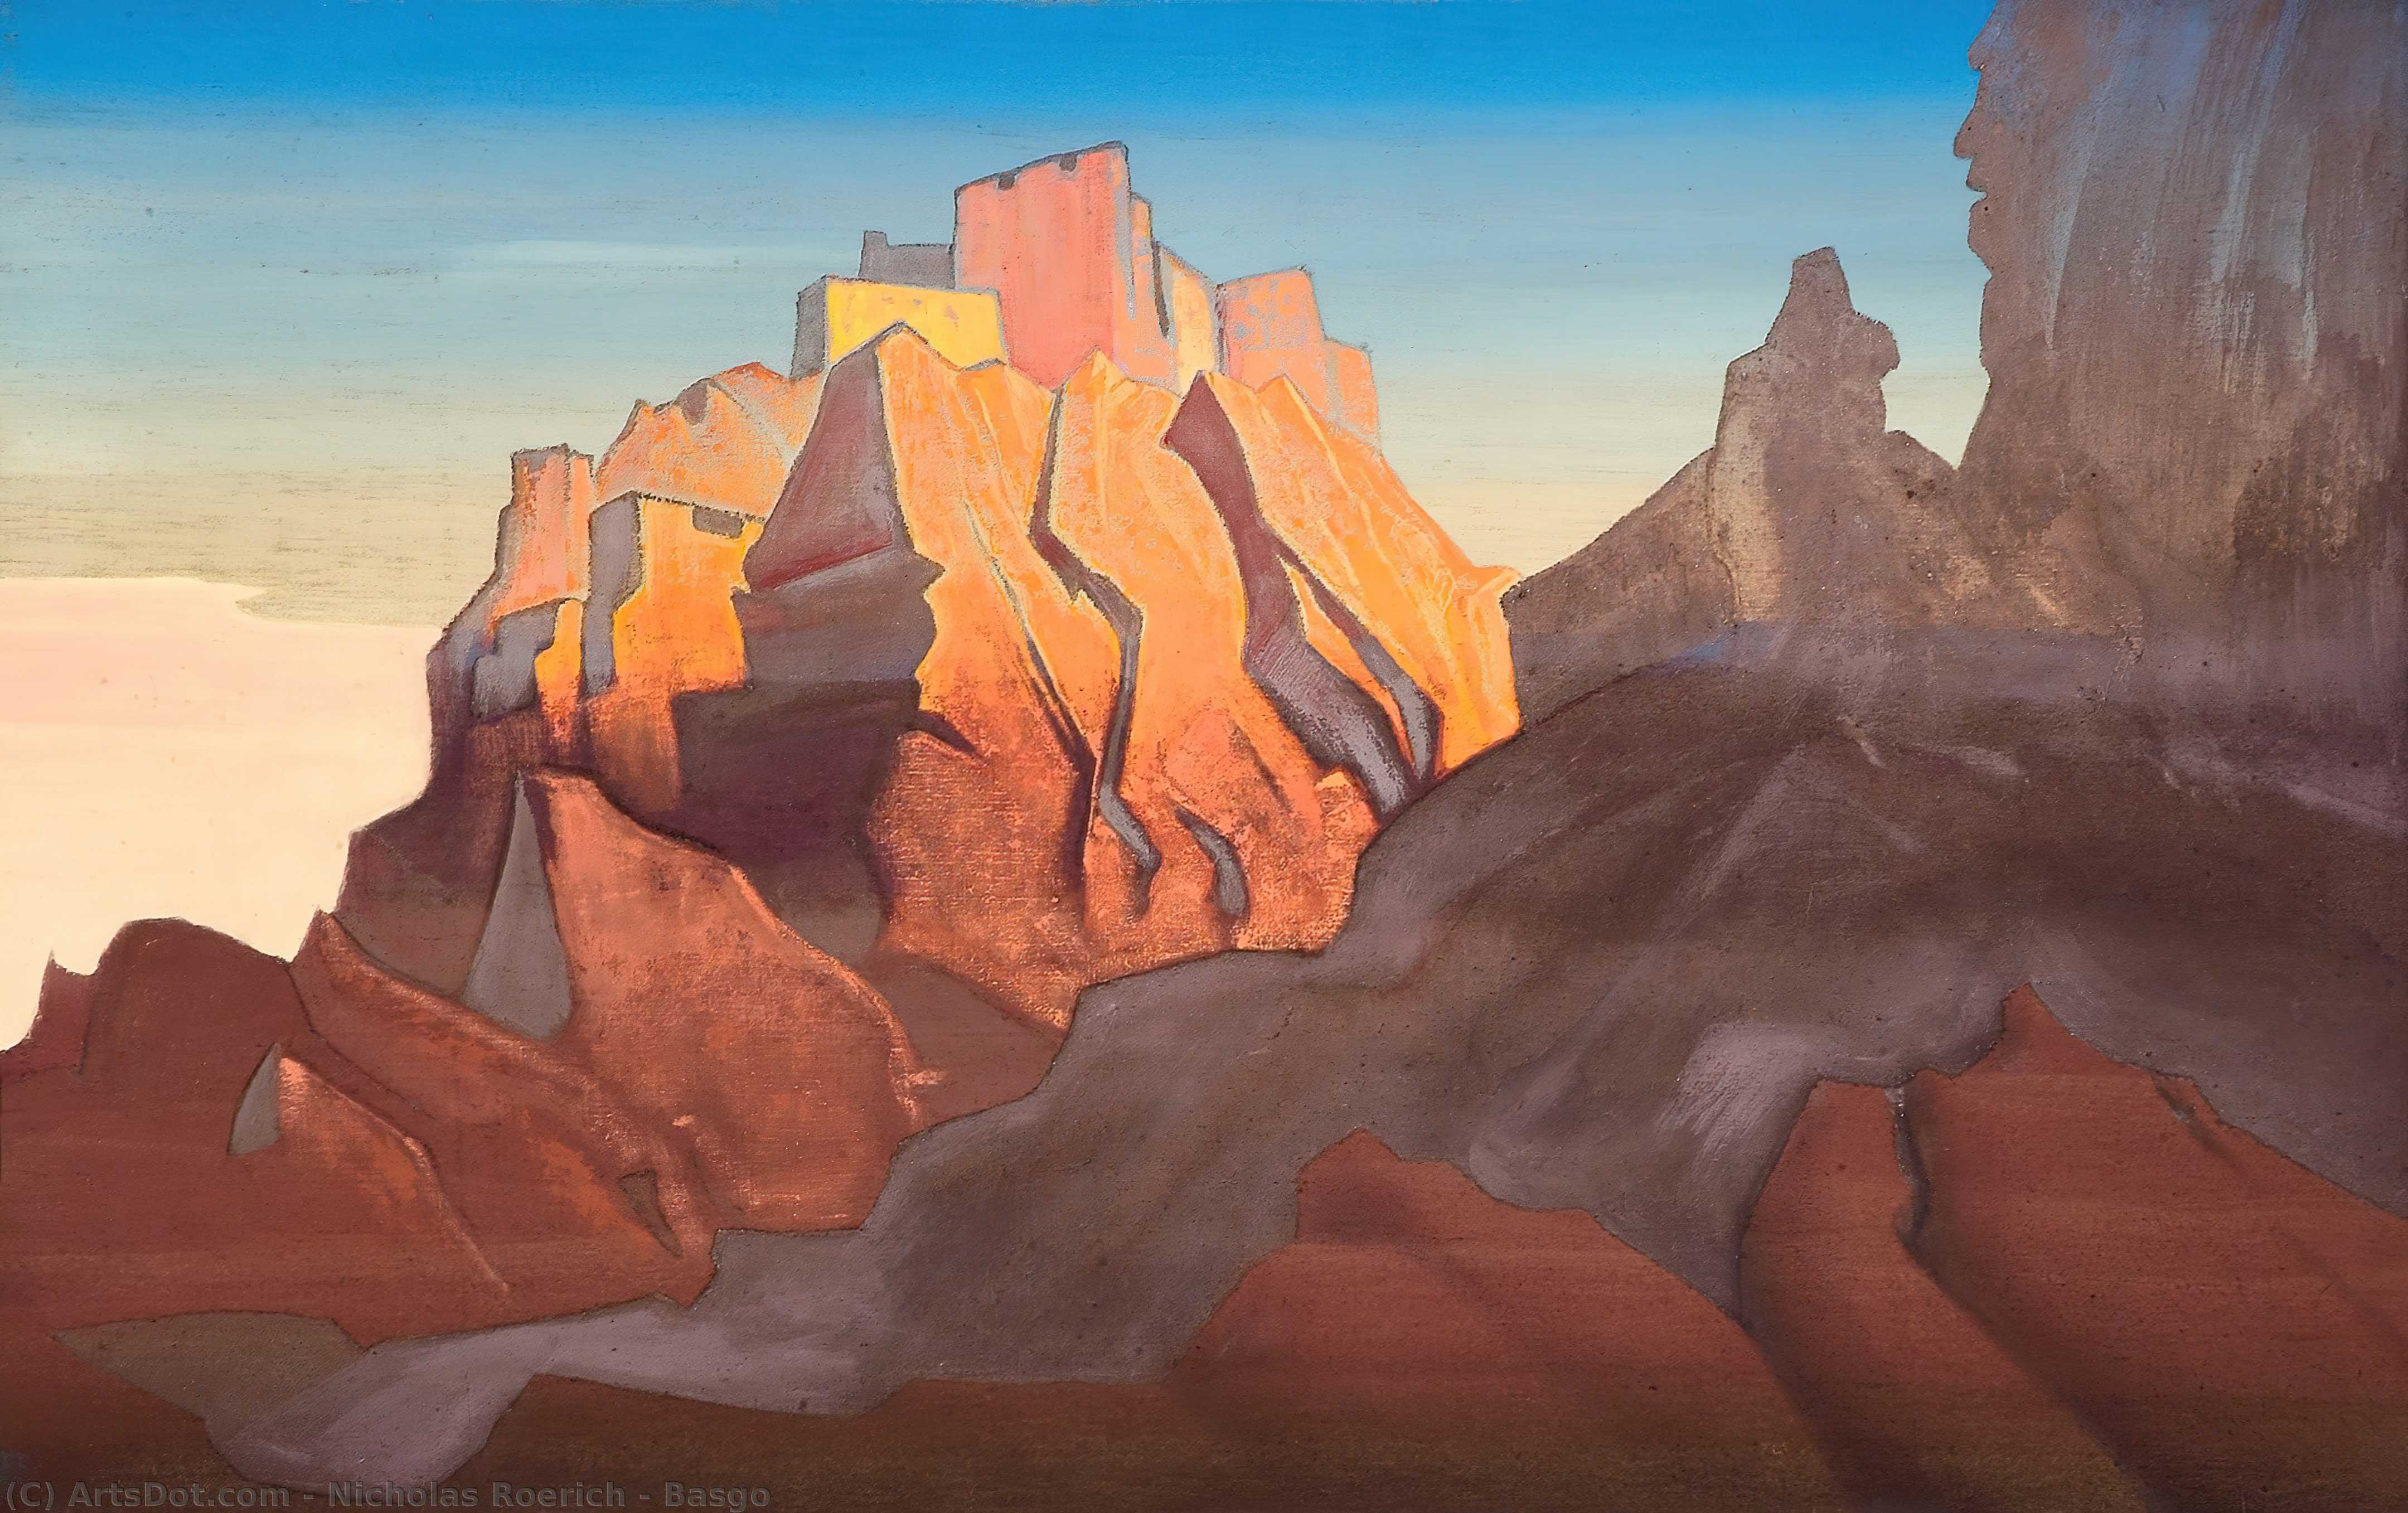 Wikoo.org - موسوعة الفنون الجميلة - اللوحة، العمل الفني Nicholas Roerich - Basgo